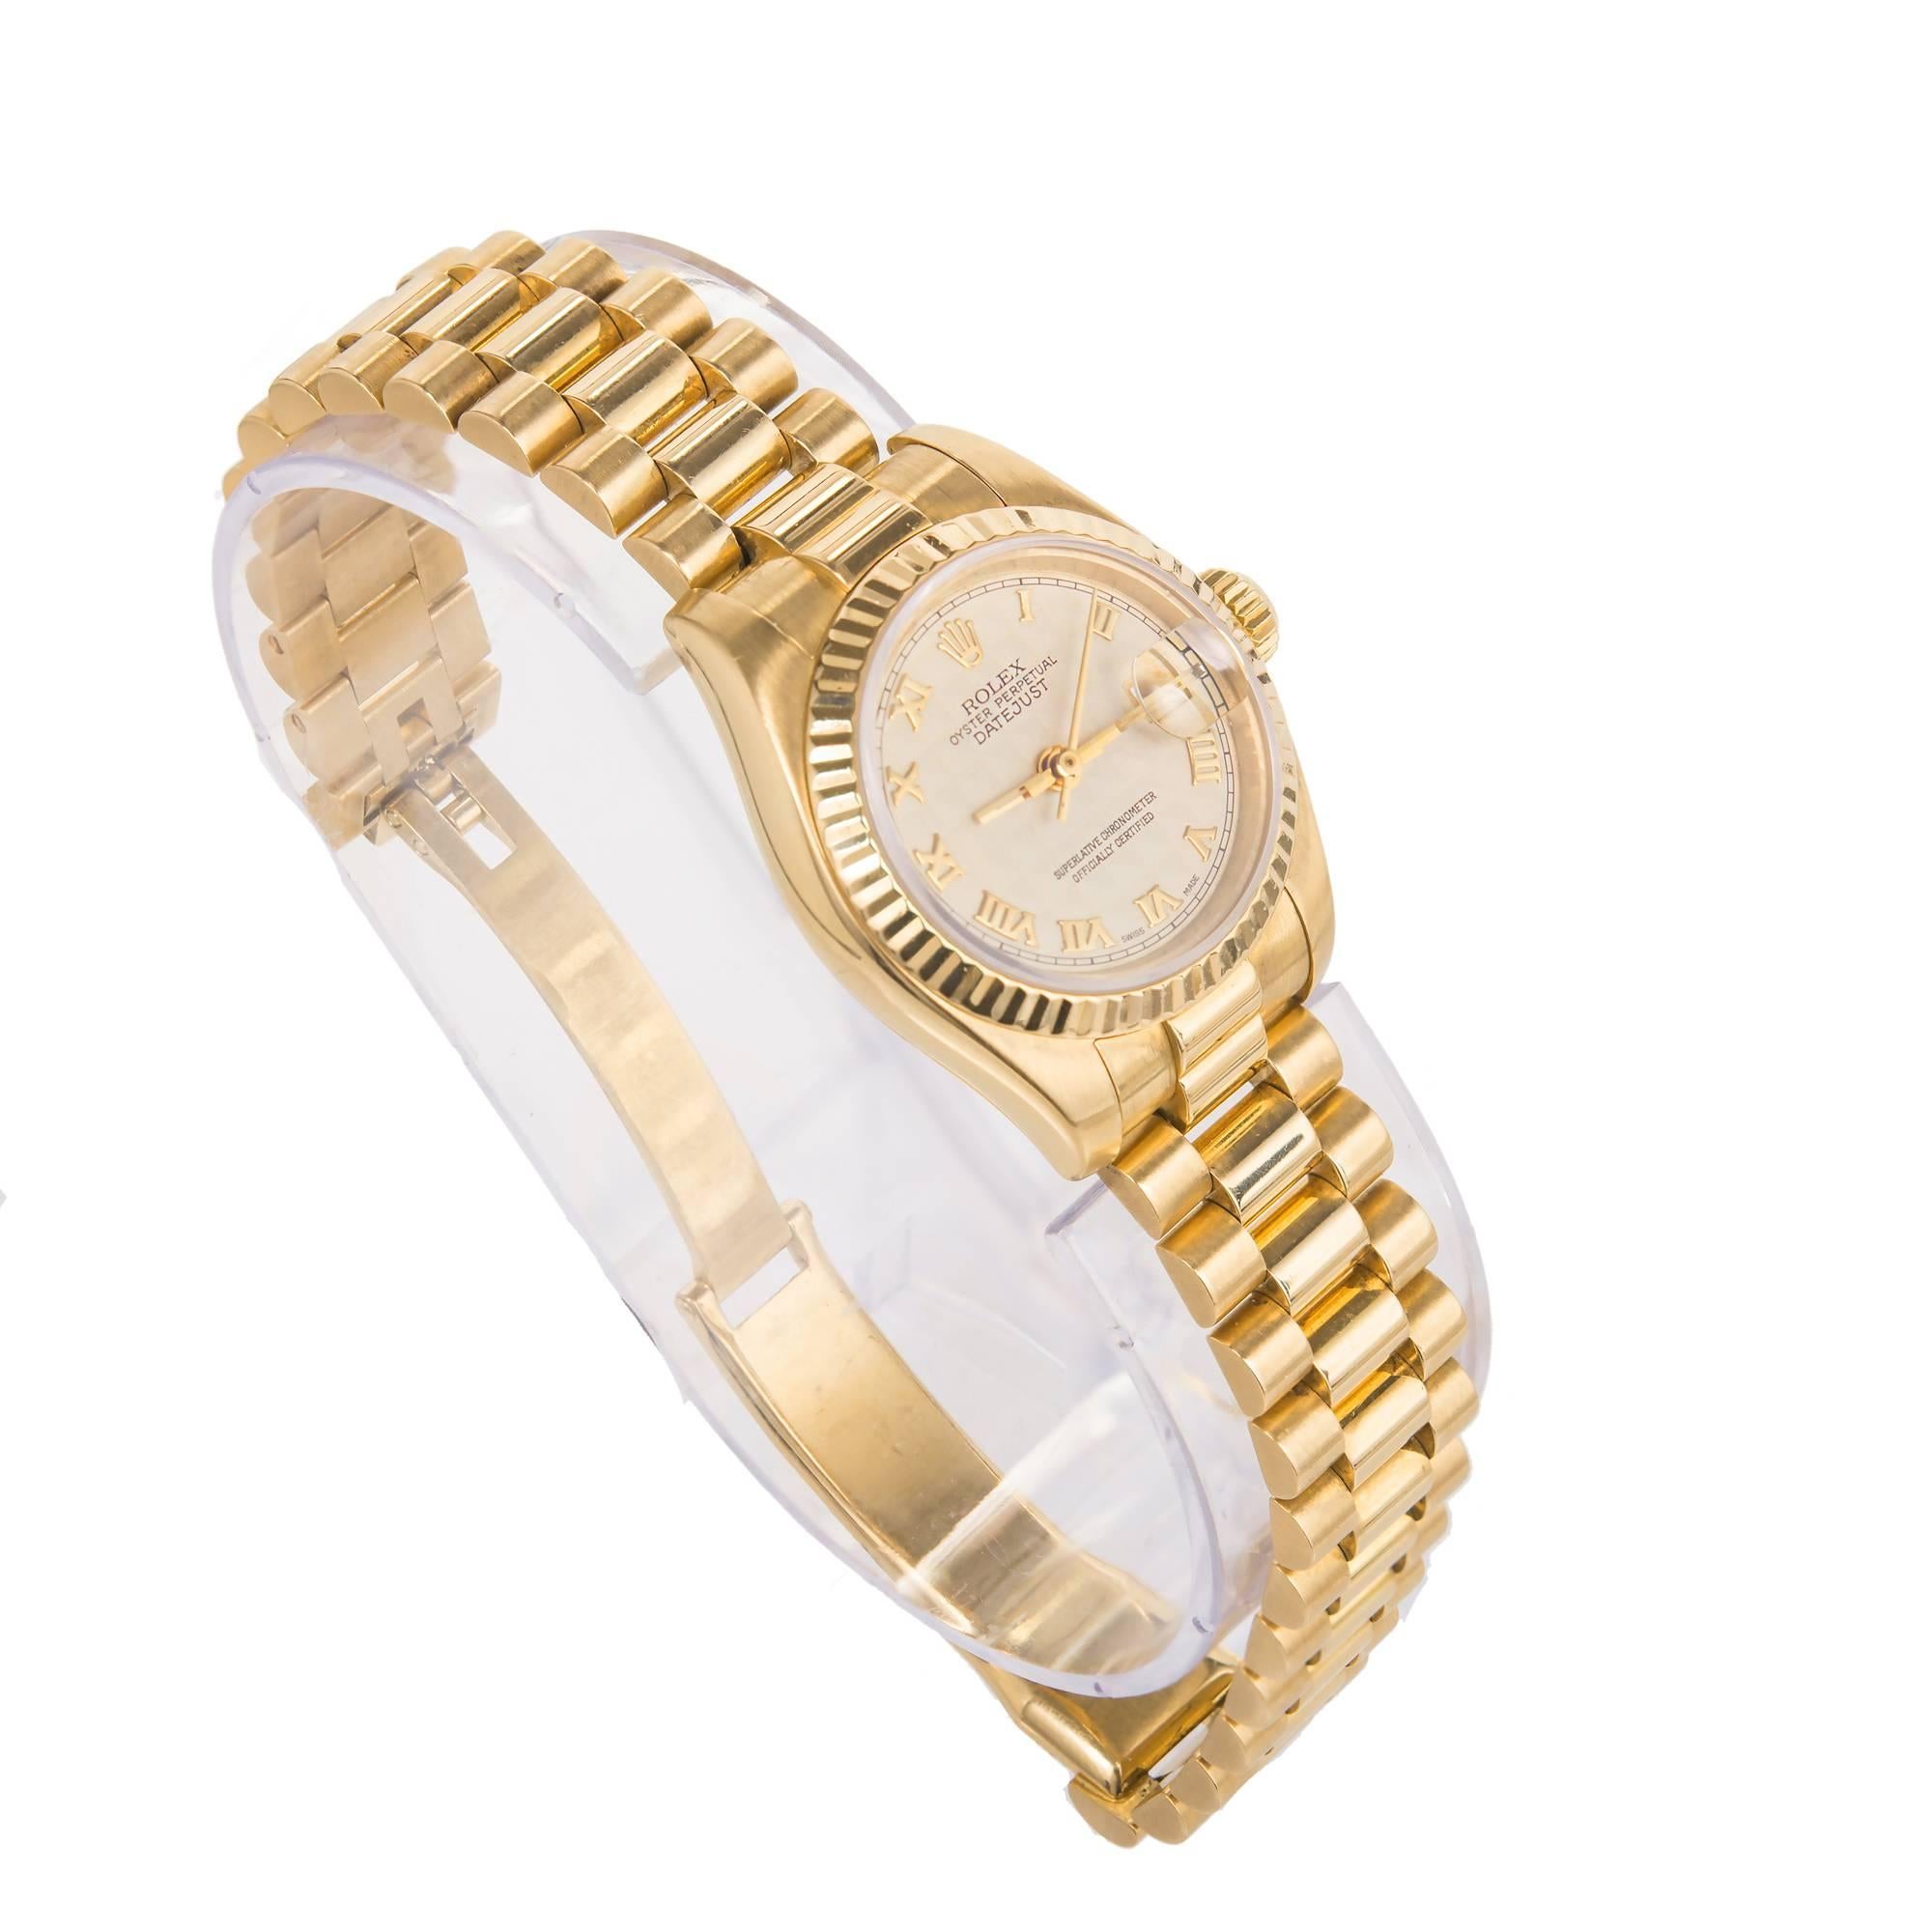 Montre-bracelet Rolex Datejust pour dame en or jaune 18 carats, réf. 179178, circa 2002, cadran texturé de couleur crème avec chiffres romains en or. Le cadran présente un motif difficile à photographier. La photo en gros plan le capture avec